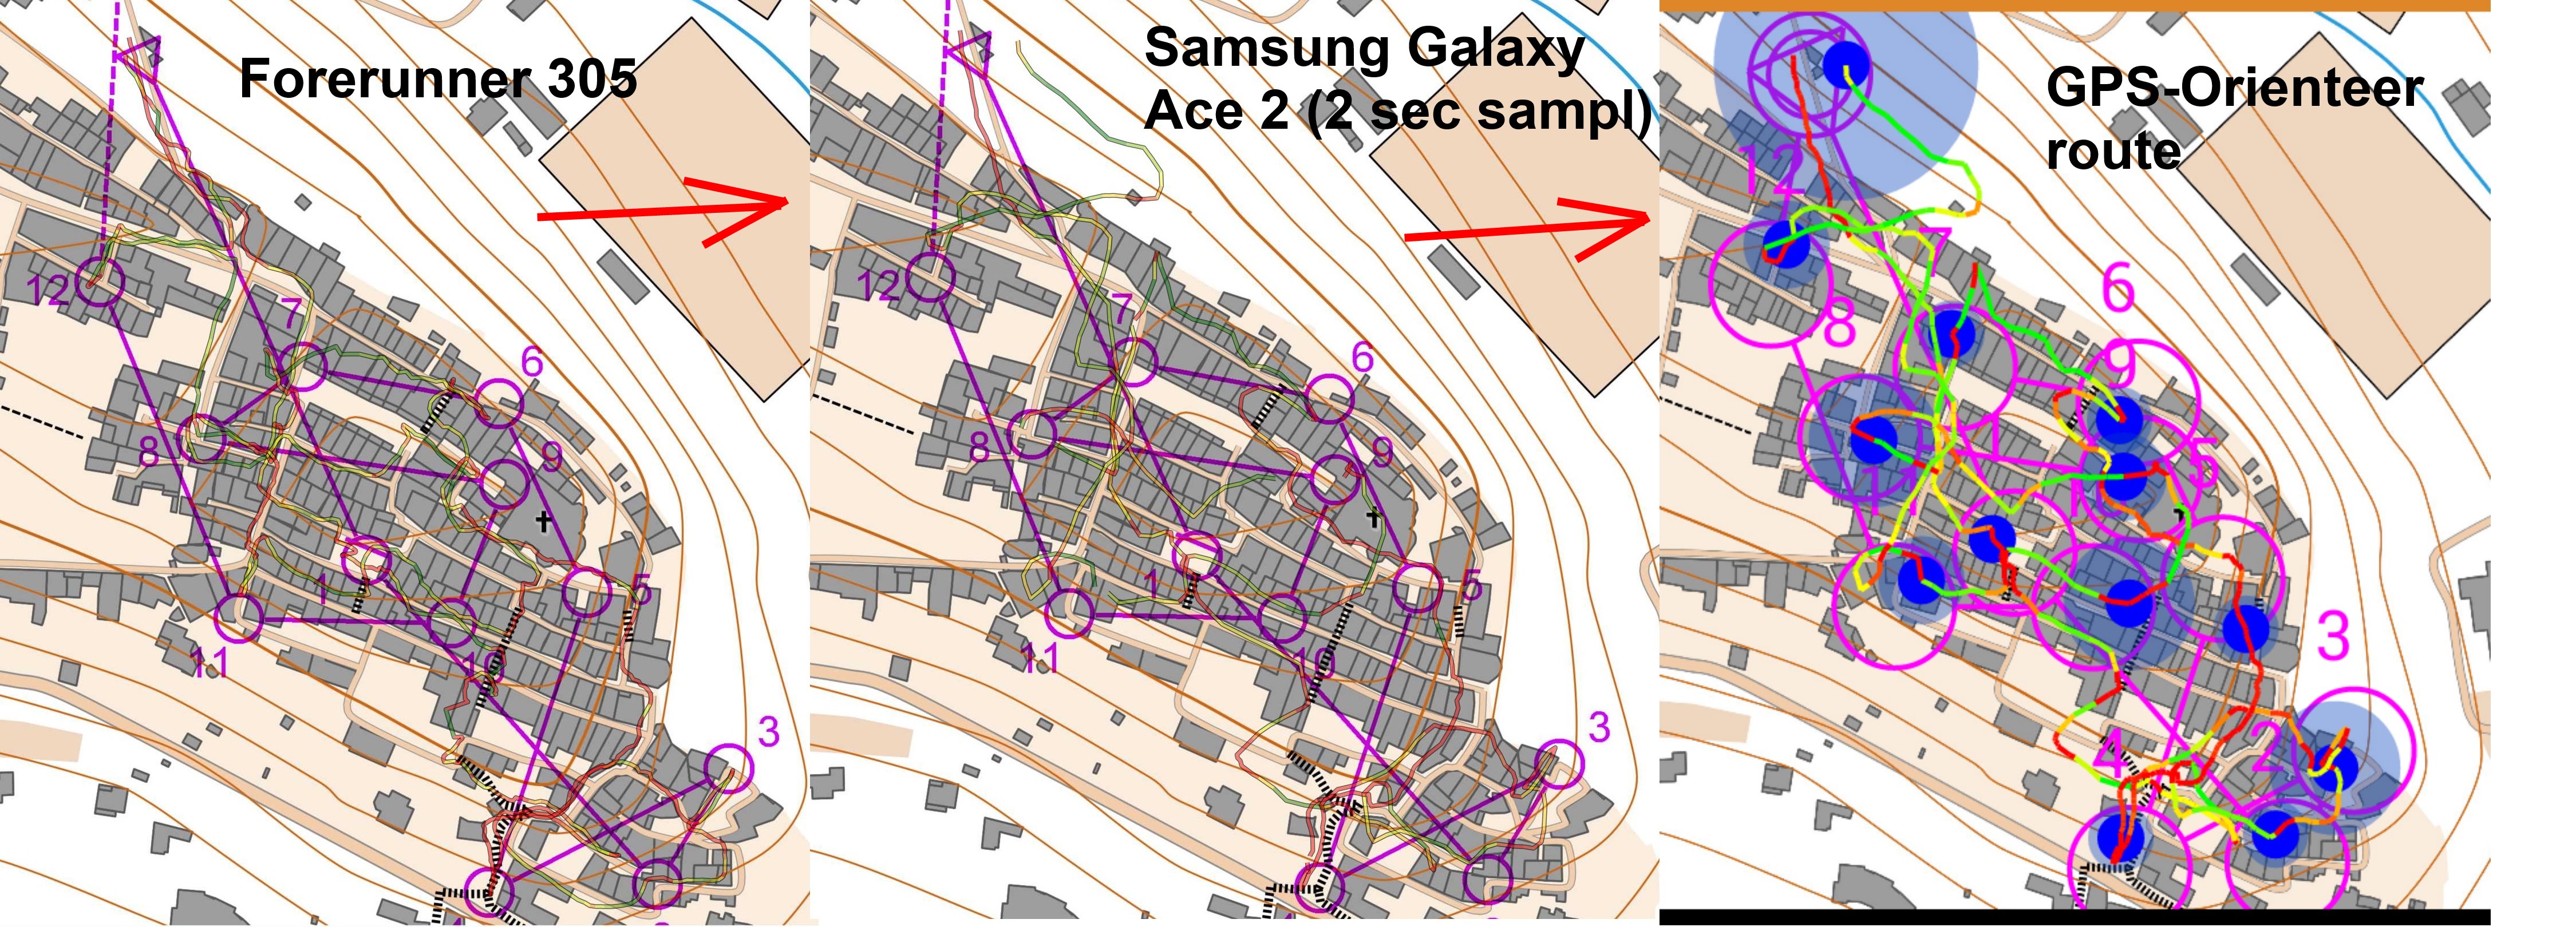 Test of GPS-Orienteering app in town (2013-10-29)